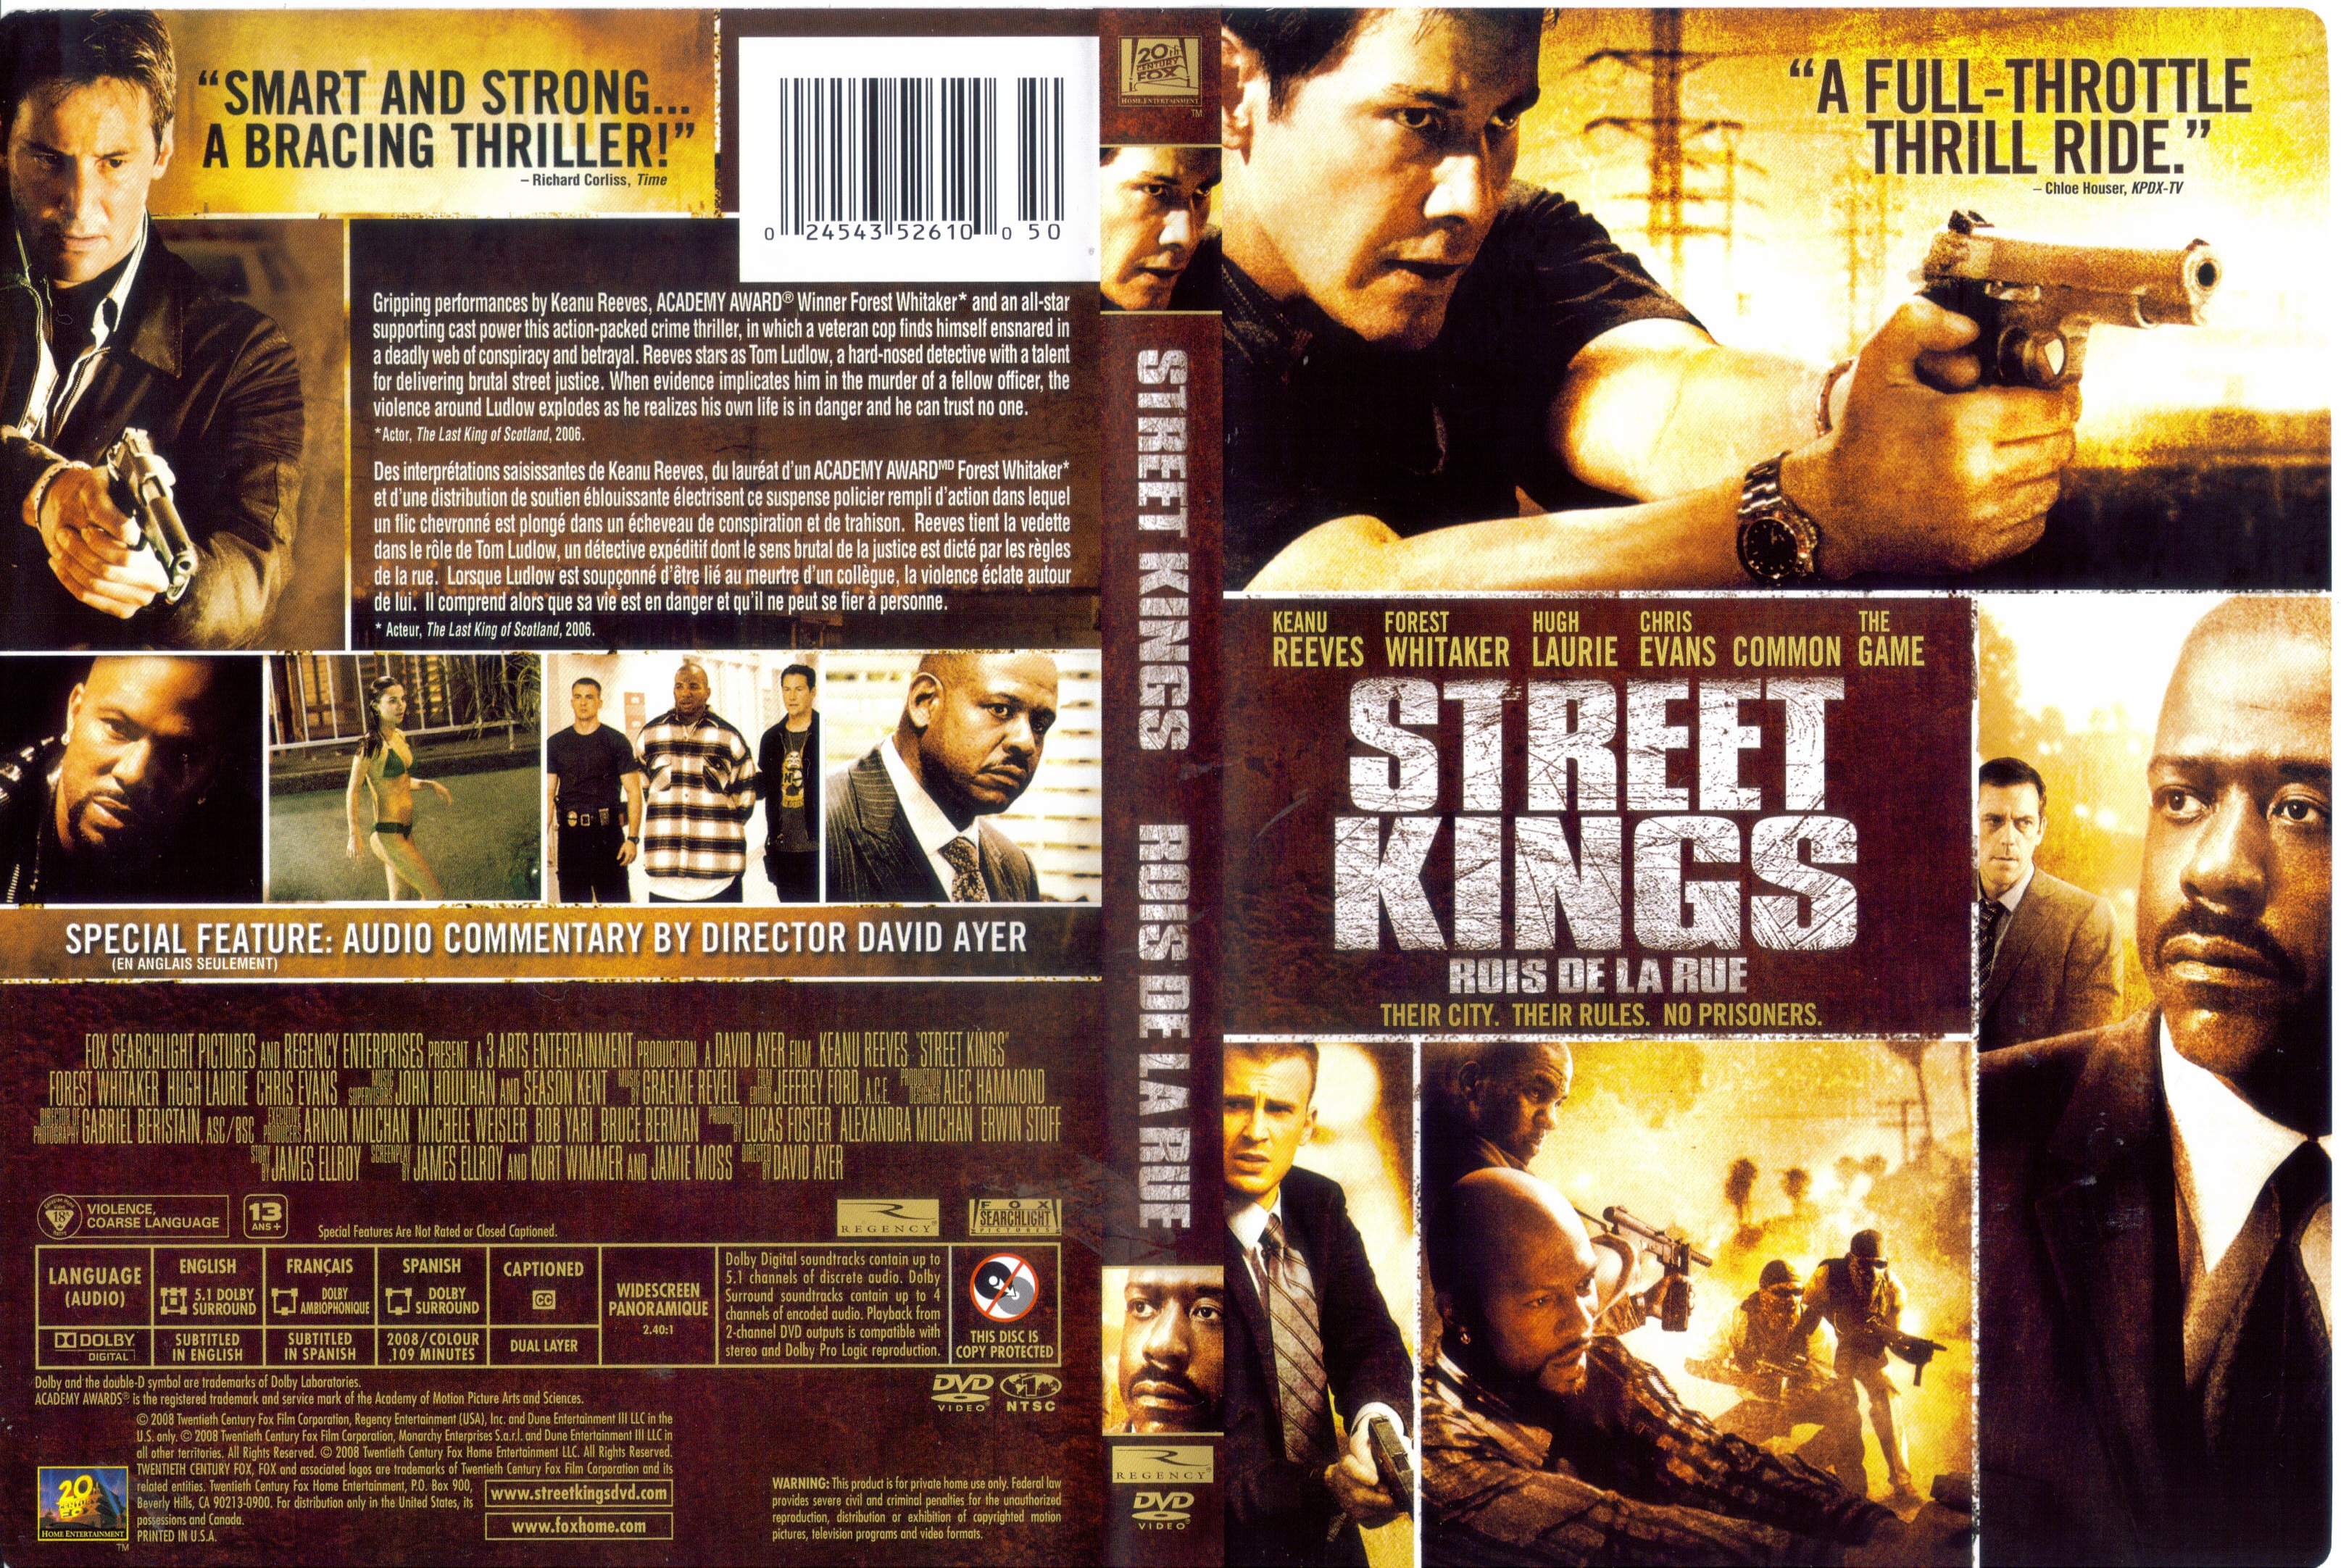 Jaquette DVD Roi de la rue - Street kings